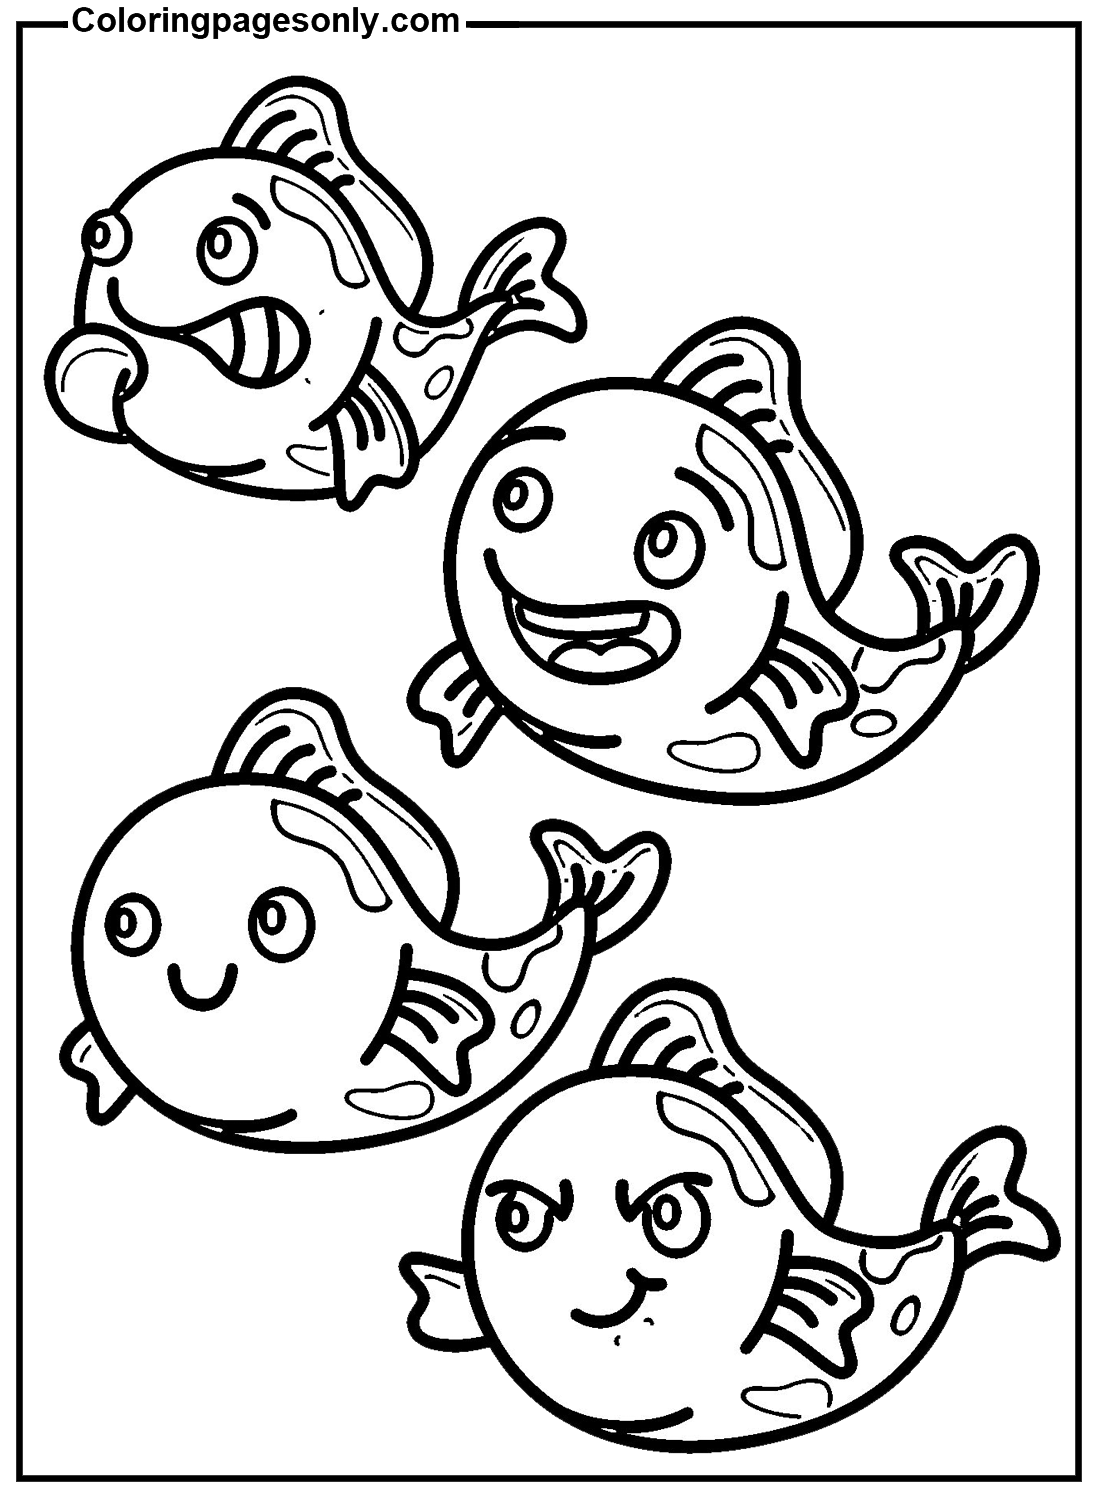 Peixe Koi de desenho animado de Peixe Koi